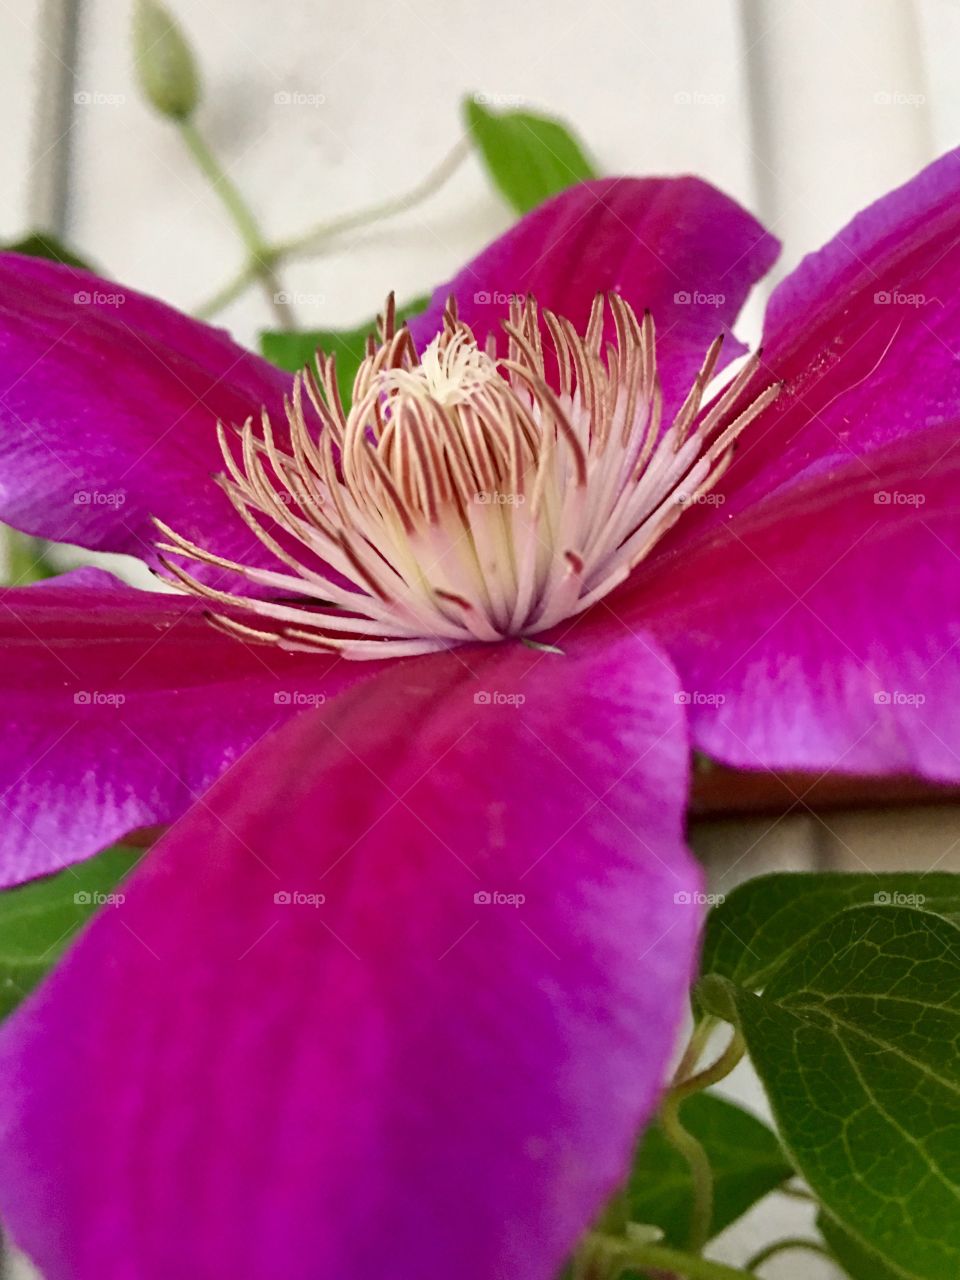 Clematis flower 